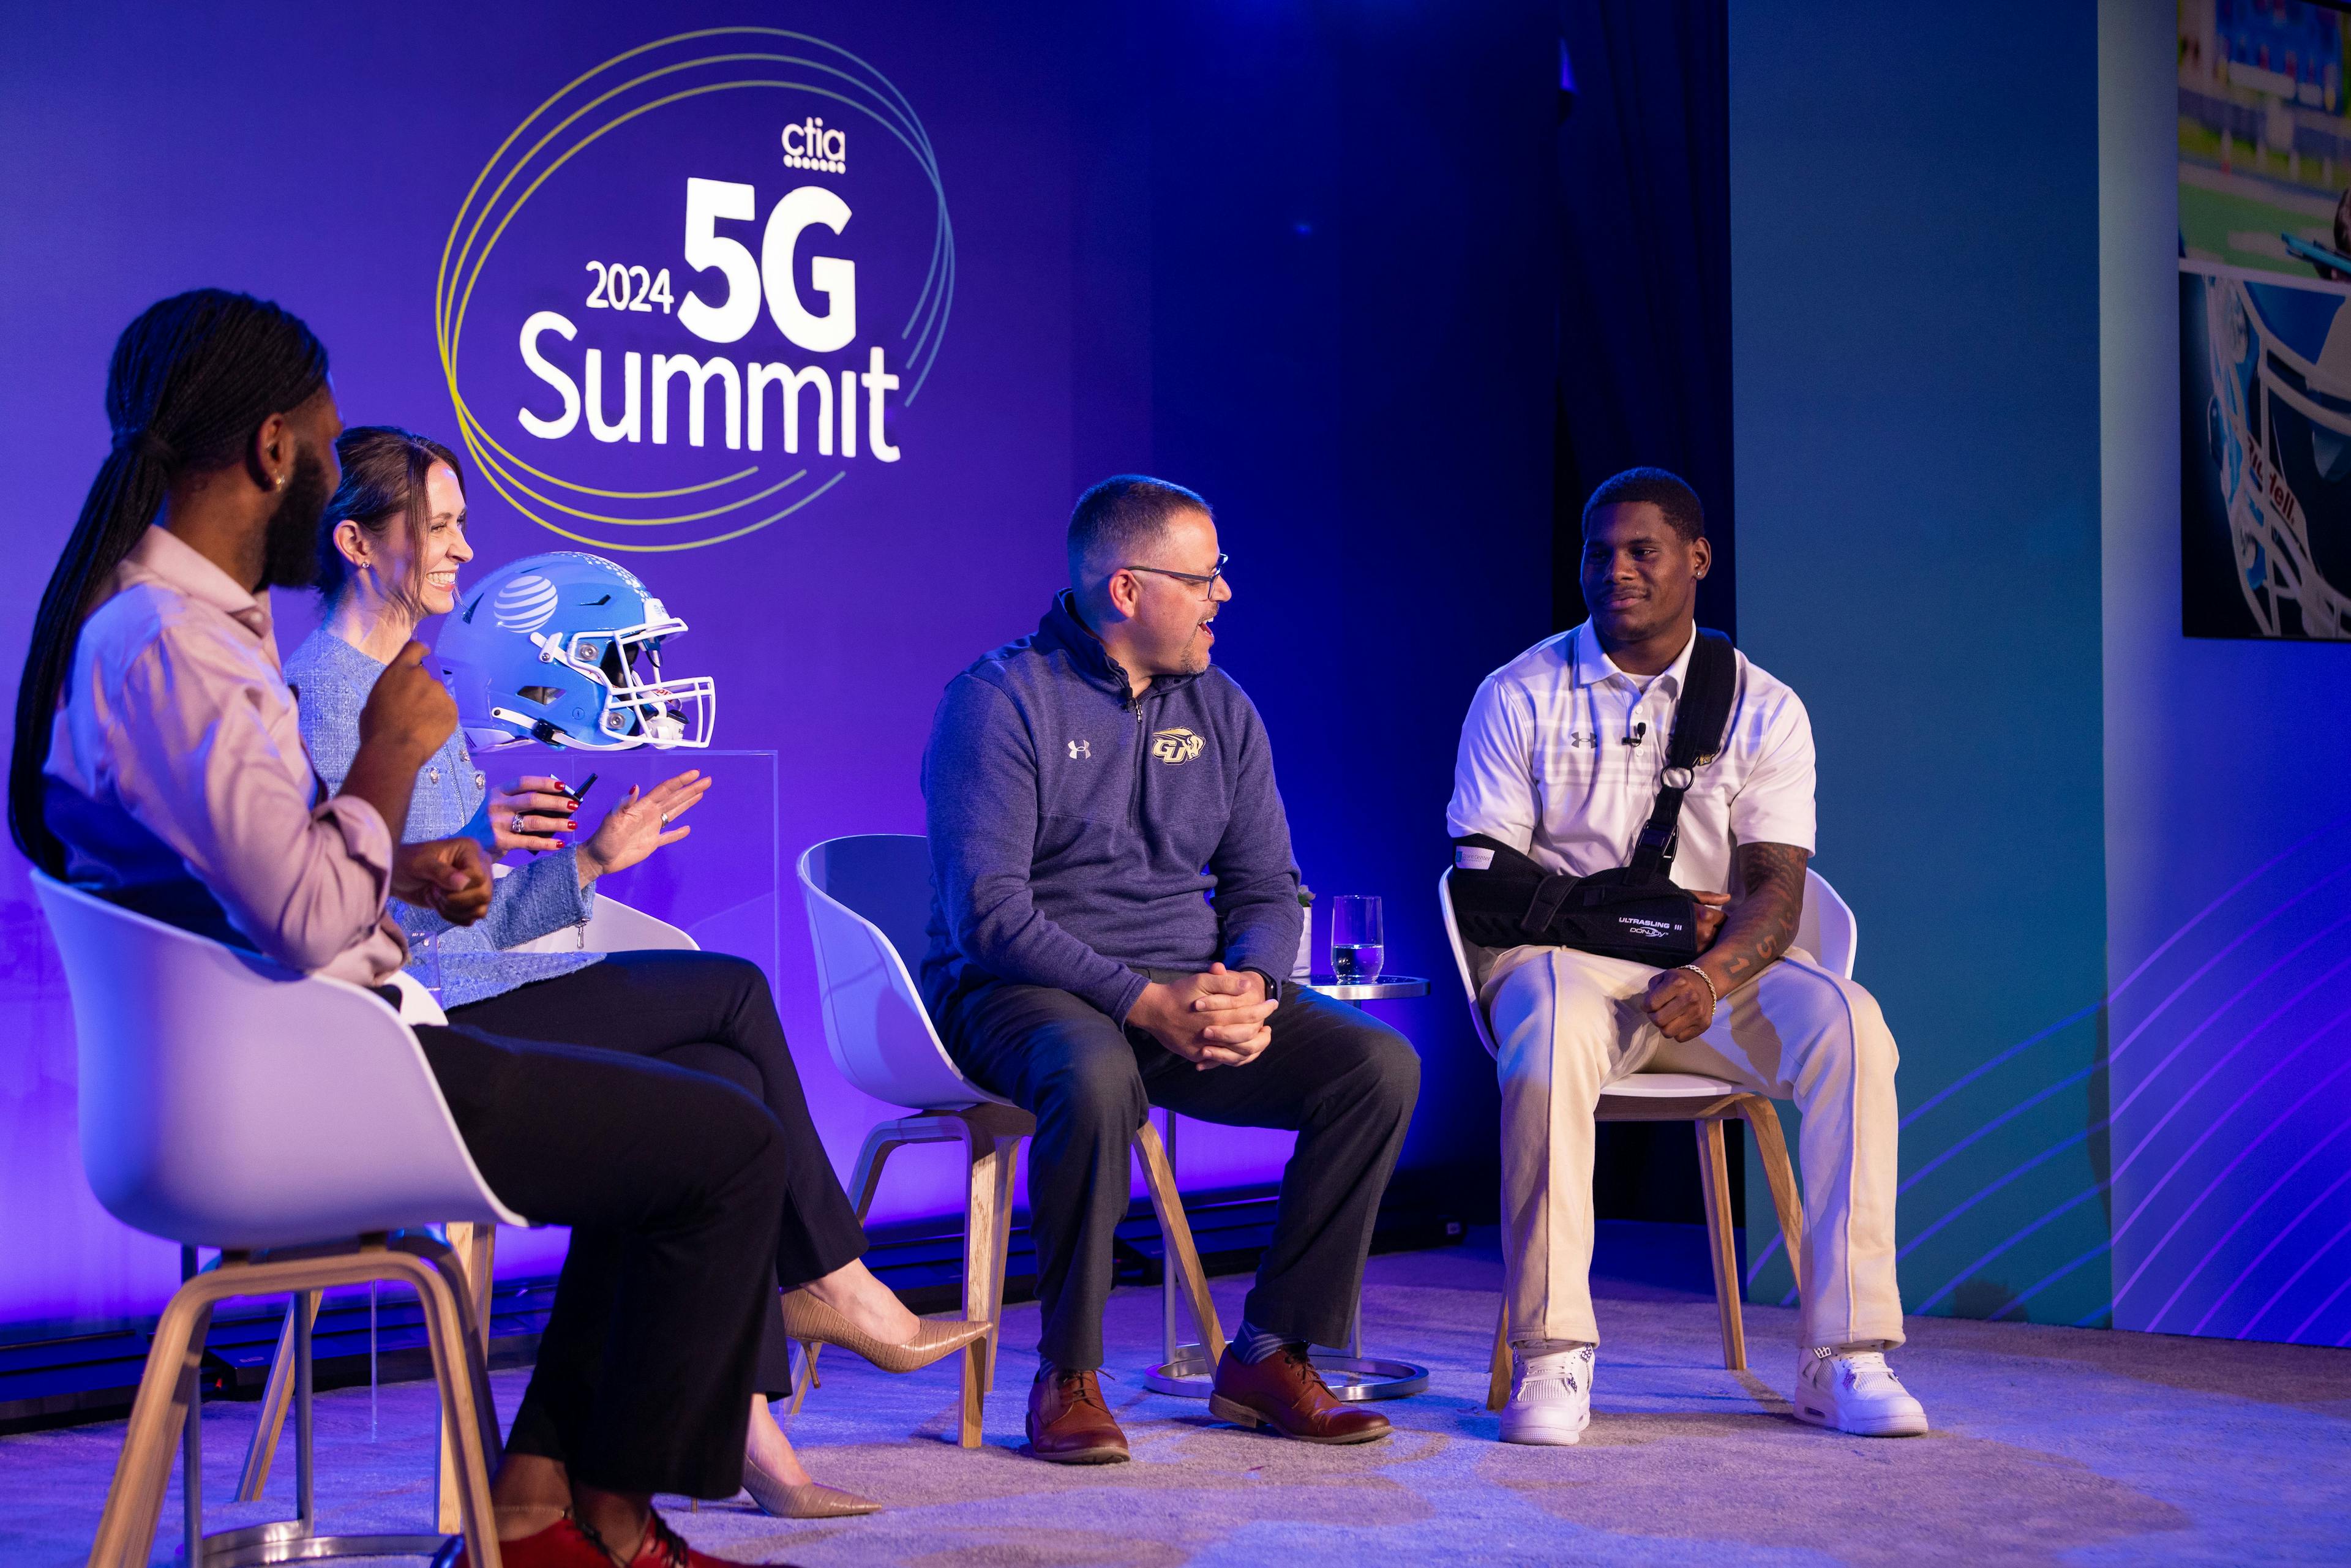 Gallaudet University's Chuck Goldstein and Brandon Washington speak at CTIA's 5G Summit.